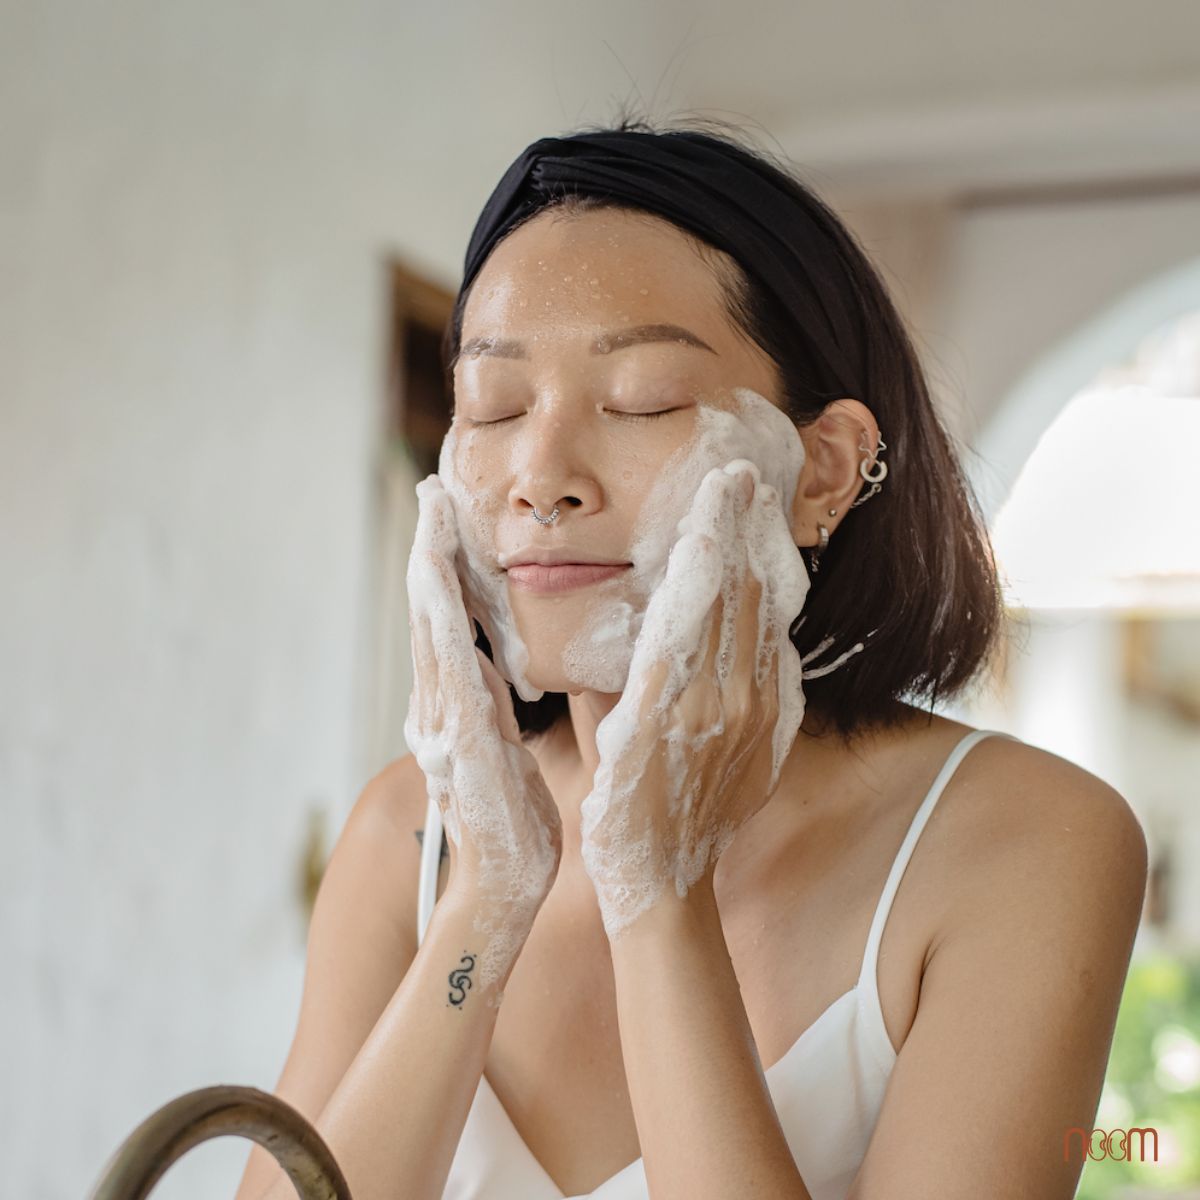 Bước 1: Làm sạch da, tắm gội rửa bằng xà bông tự nhiên. Xà bông tự nhiên vừa làm sạch dịu nhẹ, vừa chứa hơn 5% glycerine giữ nước đọng trên da bạn lâu.